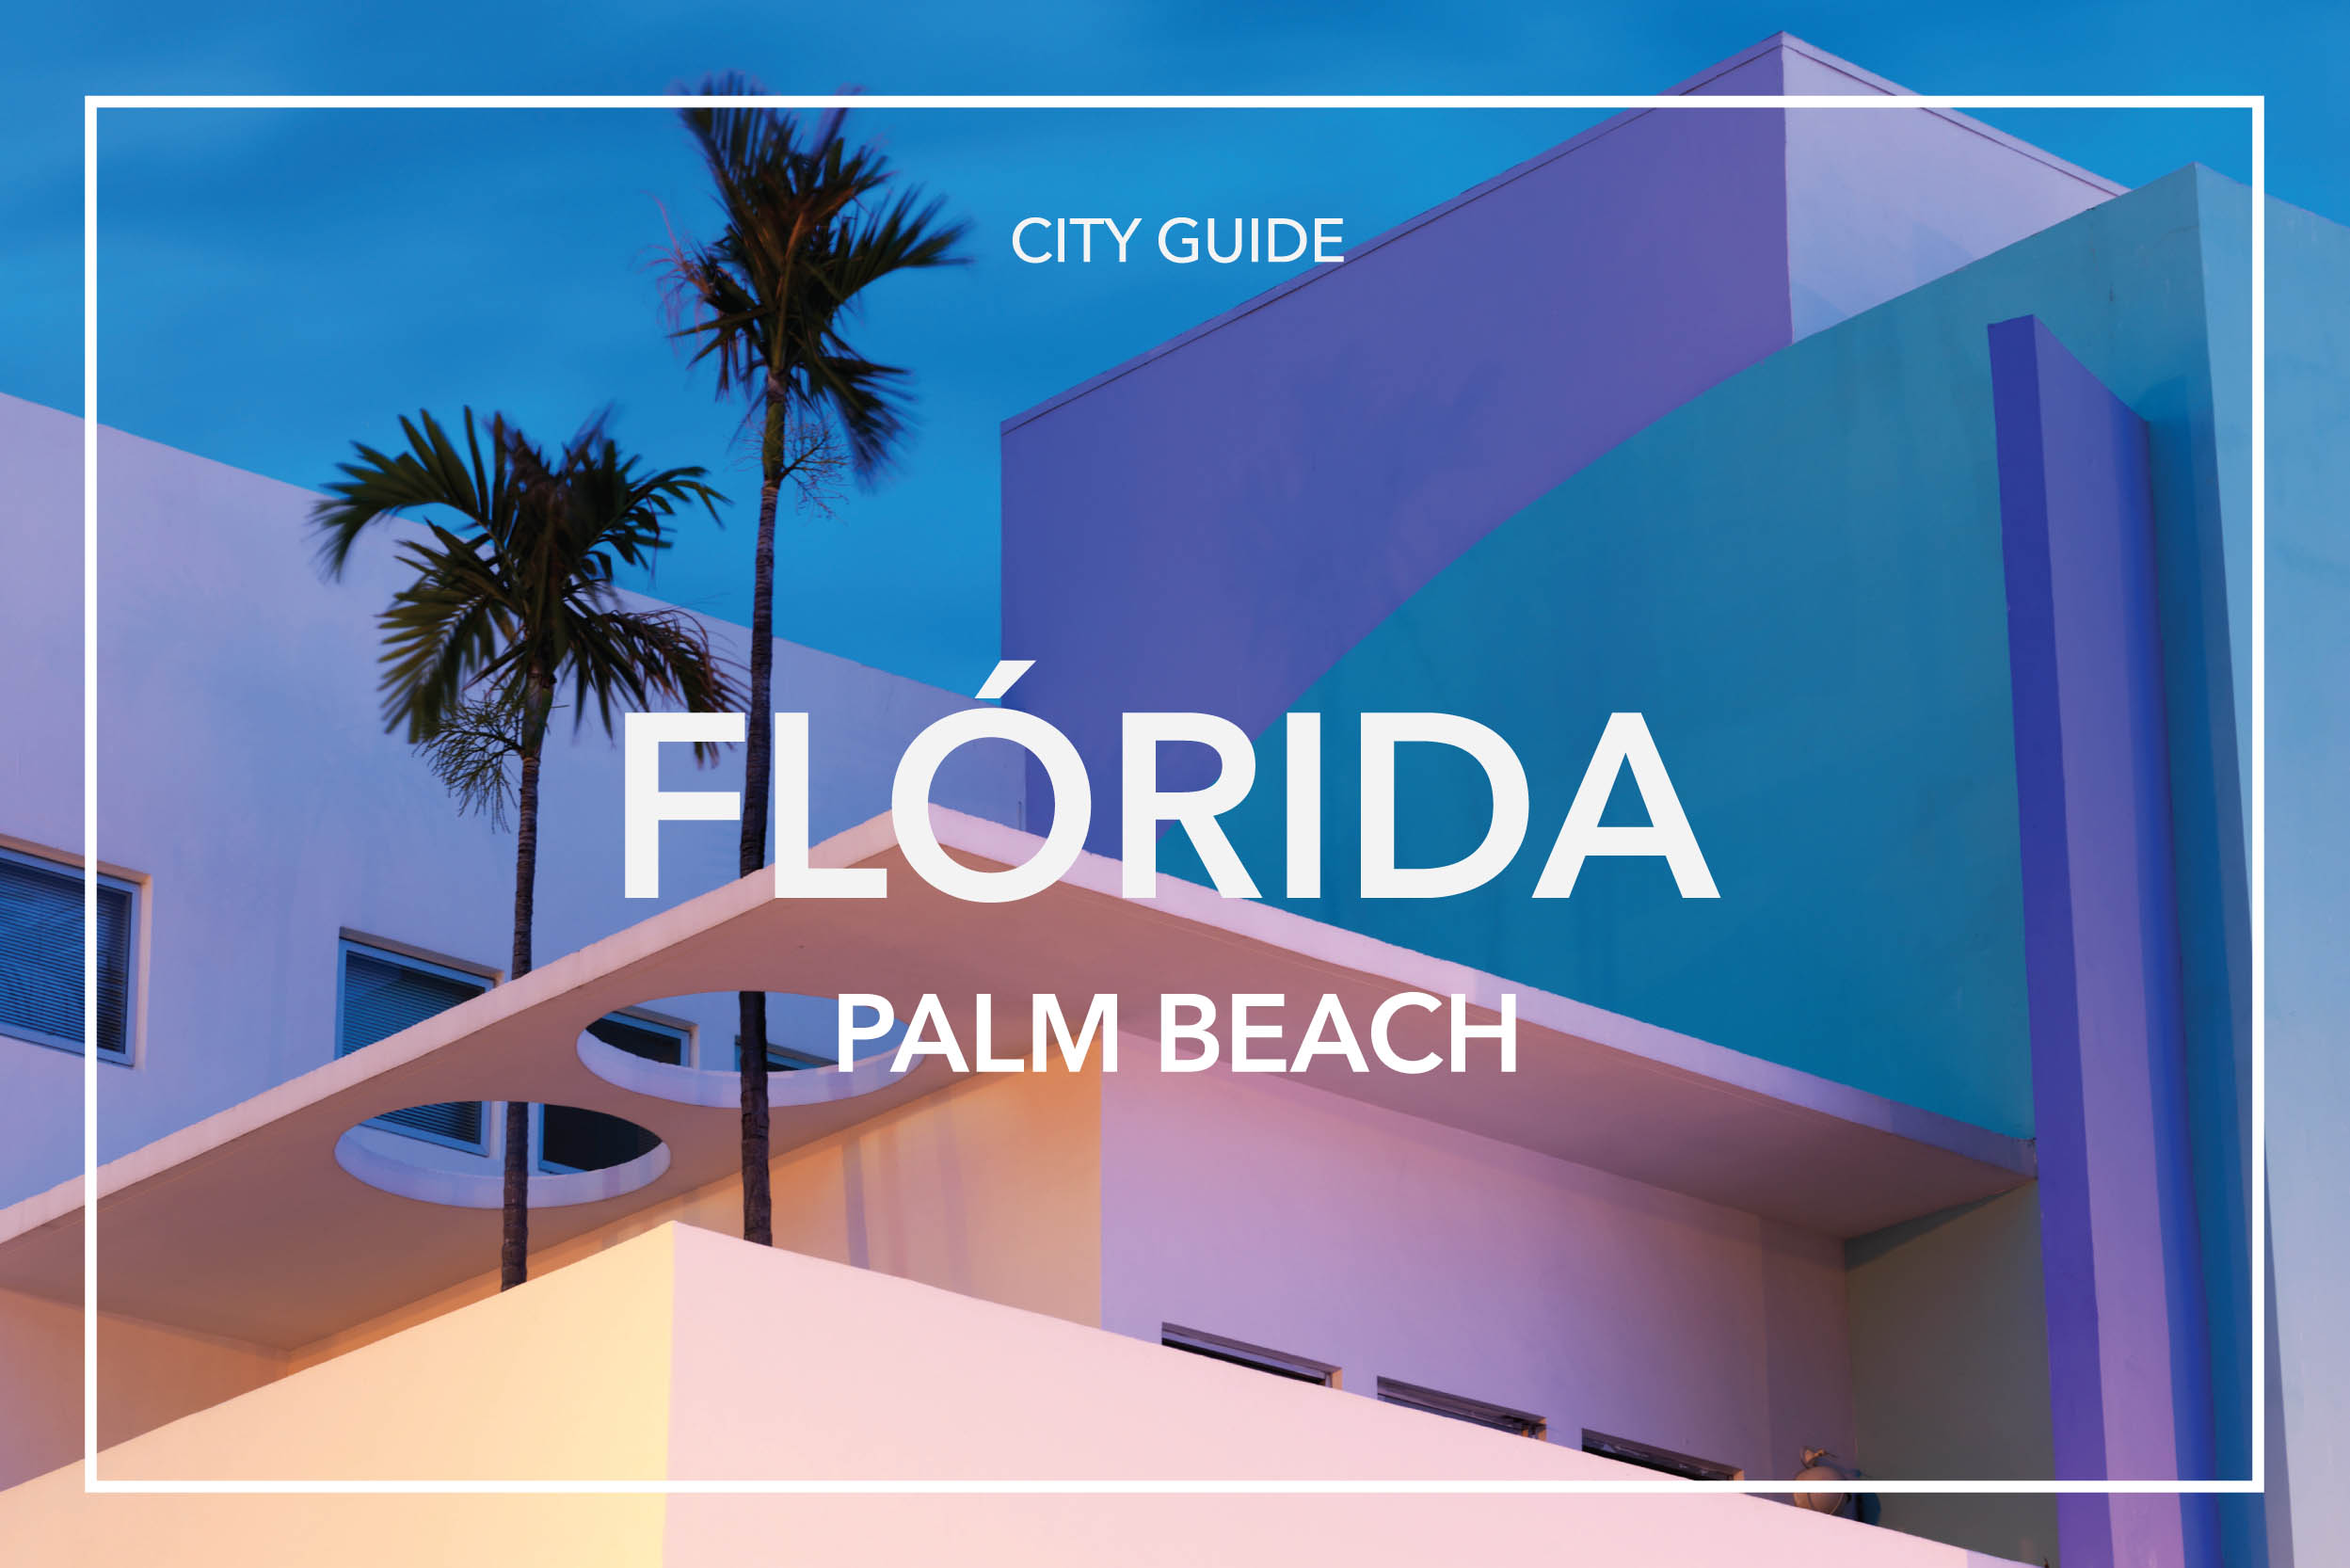 CITYGUIDE_FLORIDA_FRAME_PALMBEACH